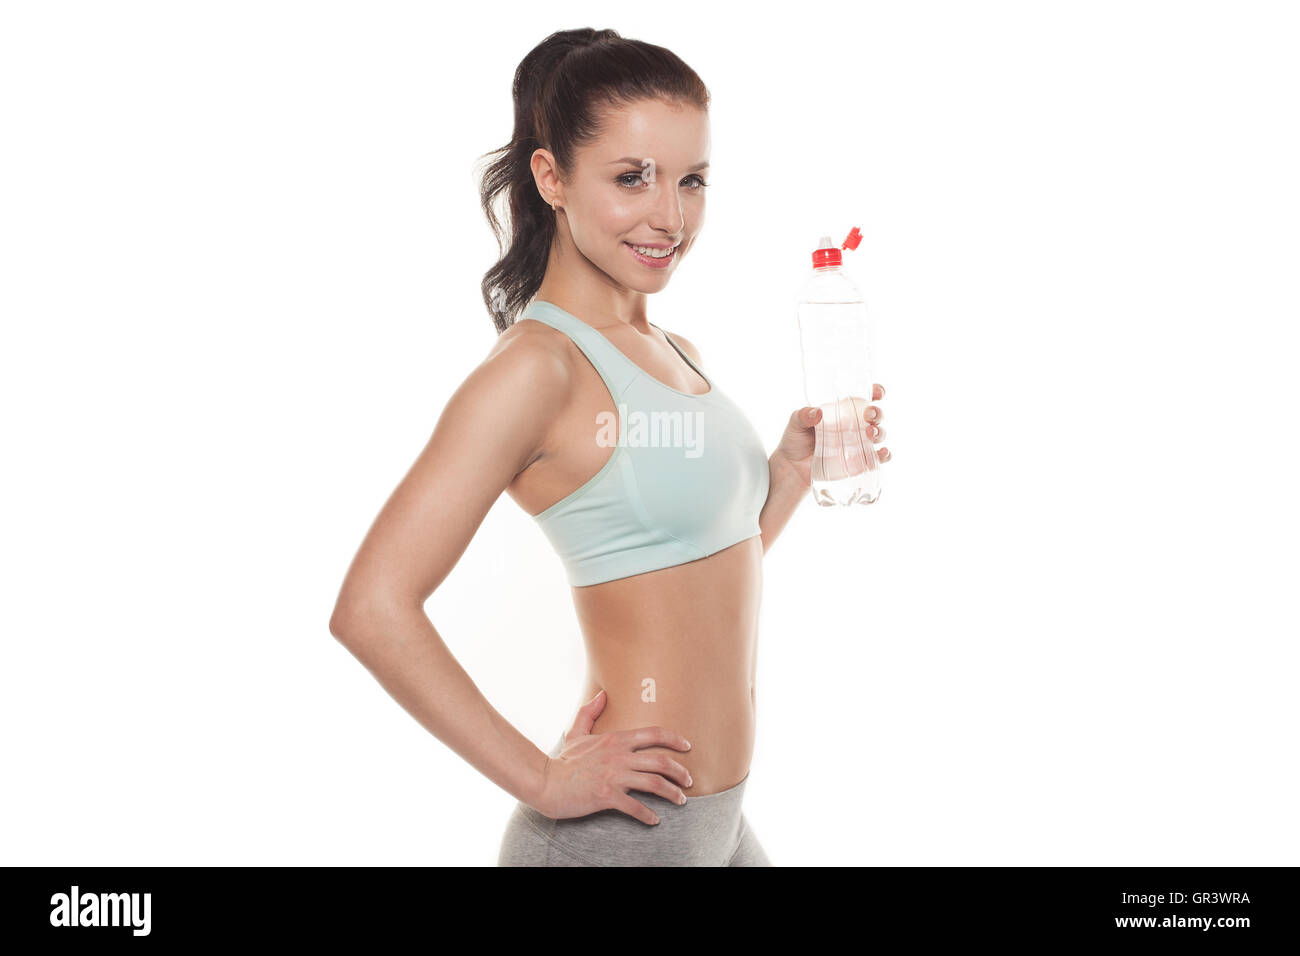 Ragazza sportiva acqua potabile da una bottiglia dopo una sessione di allenamento fitness training, isolato su sfondo bianco Foto Stock